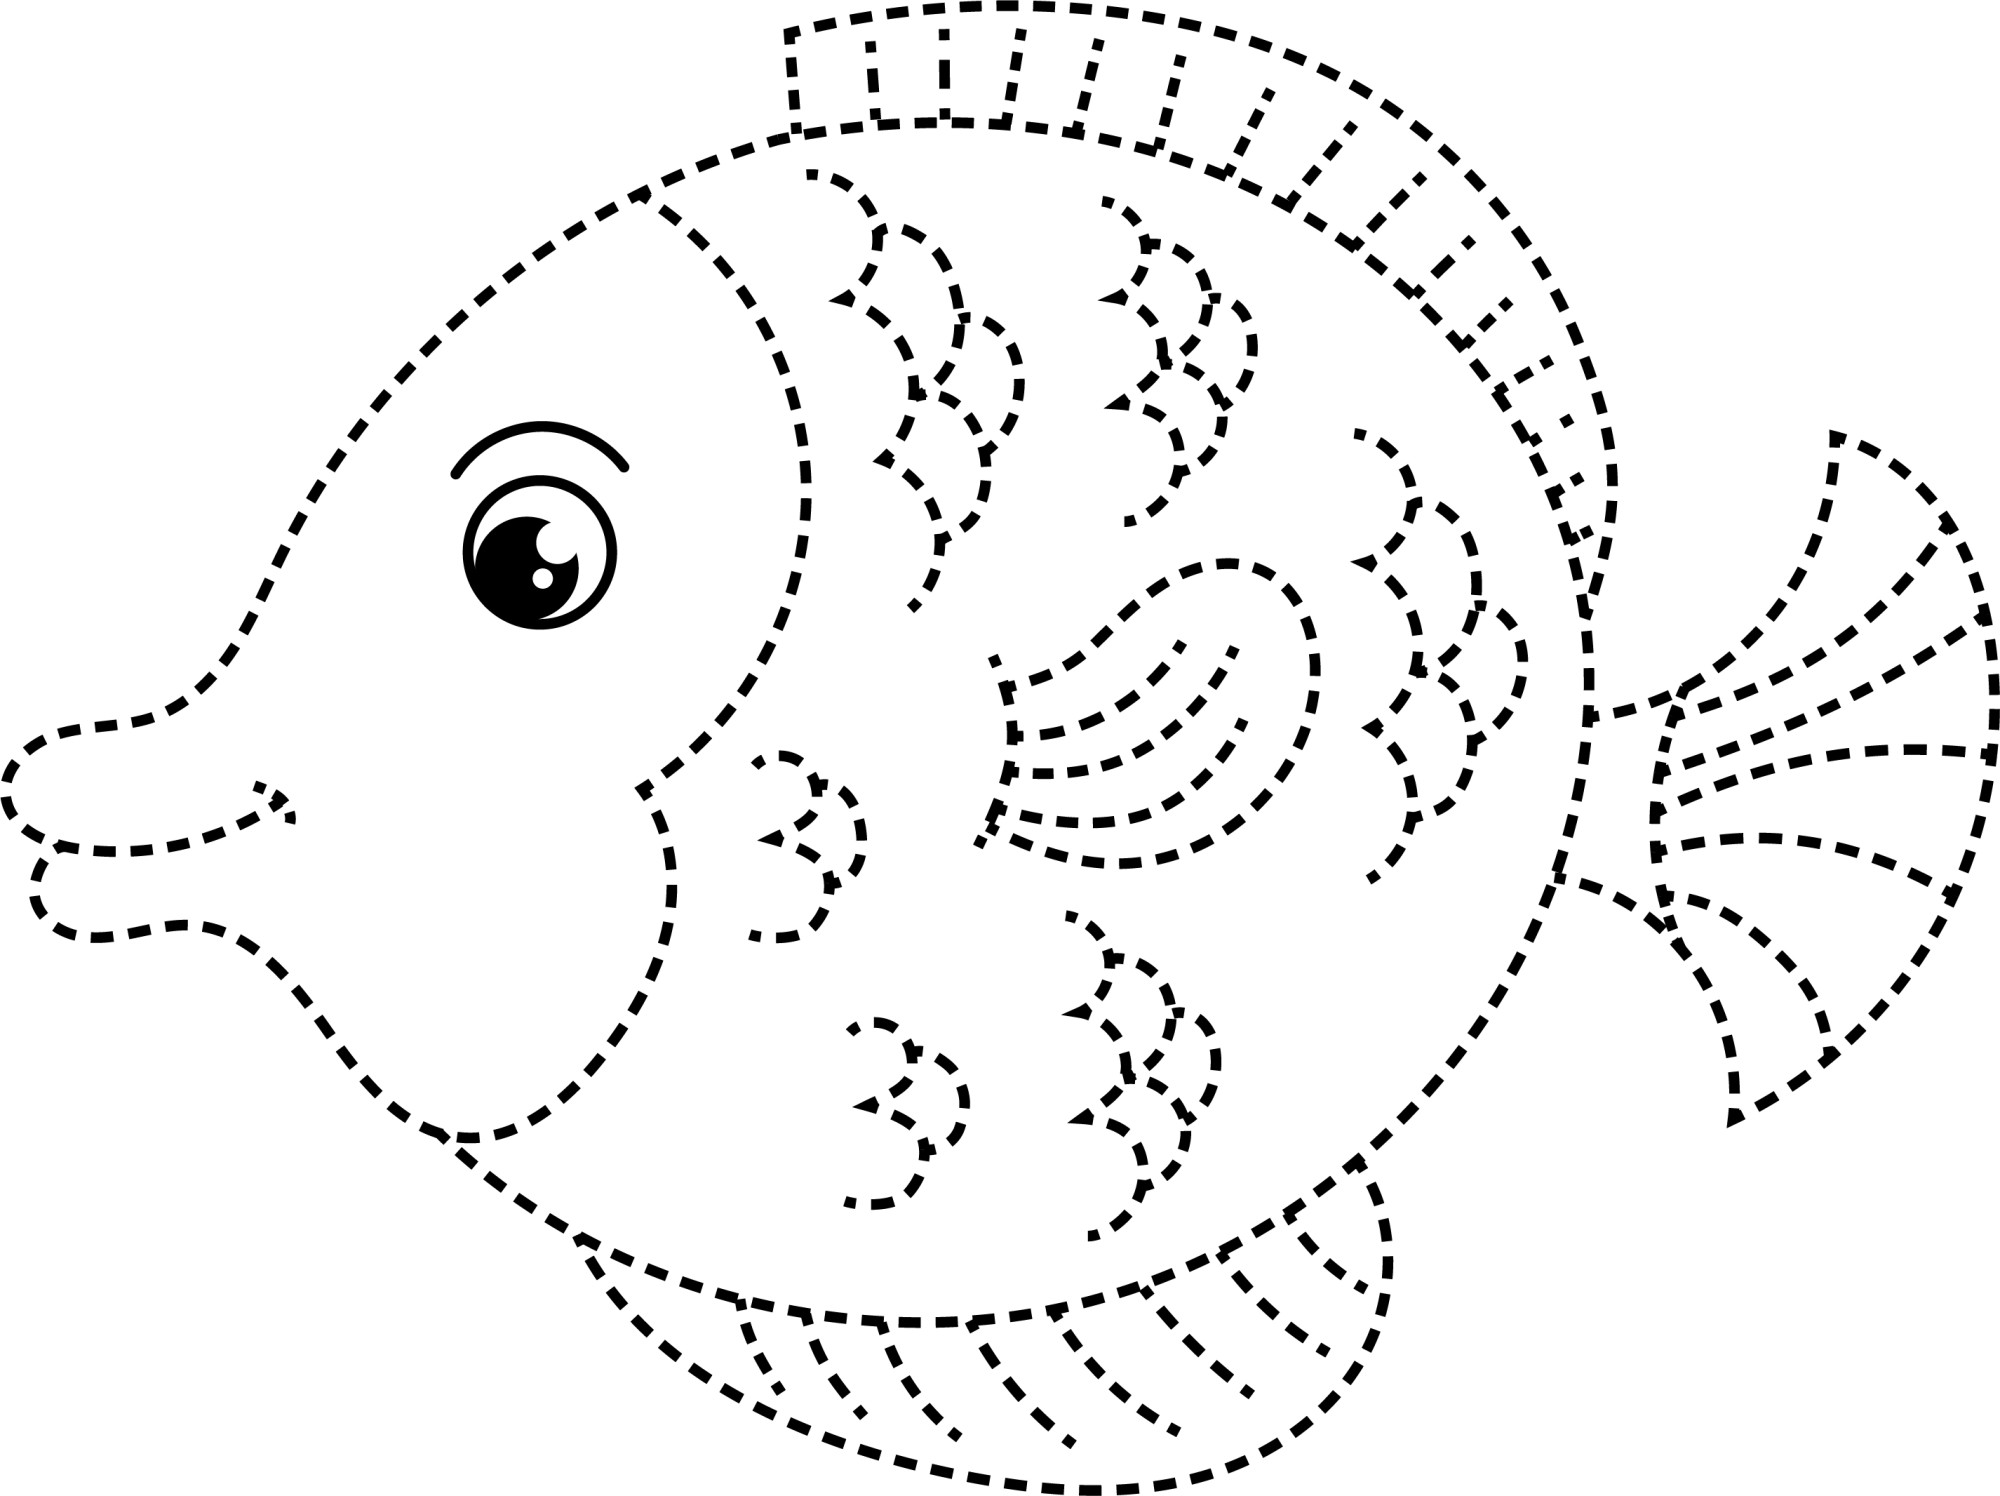 Раскраска для детей: красивая рыбка по точкам